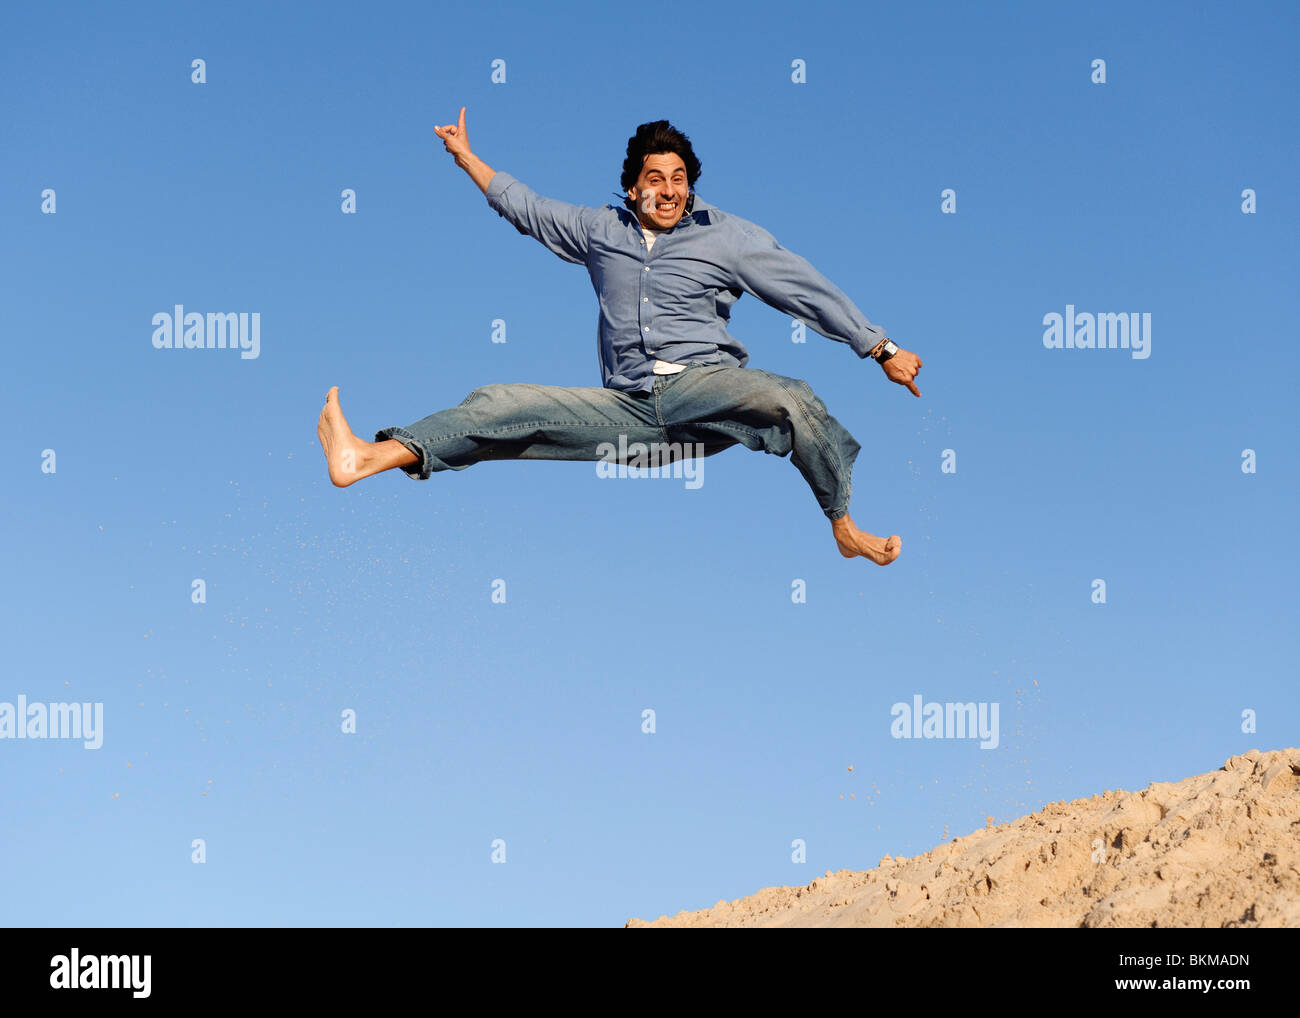 Un homme sauter dans l'air Banque D'Images